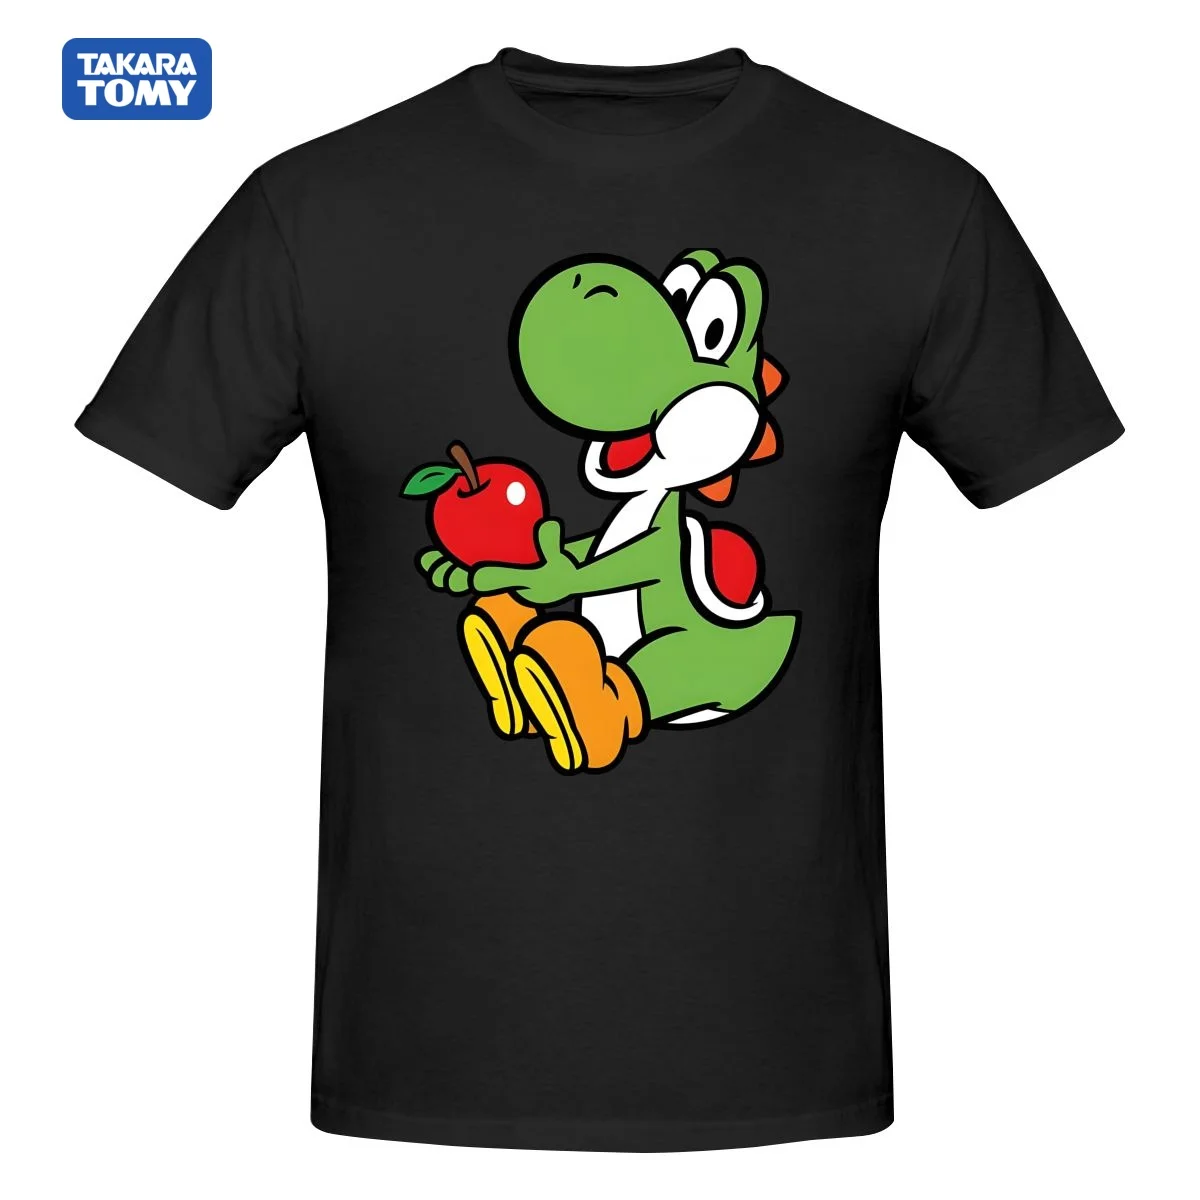 

Yoshi Tshirt Super Mario T-shirt Mario T Shirt Super Smash Bros Tshirt Gaming Shirt Retro Game Tee Video Game T-shirt Graphics